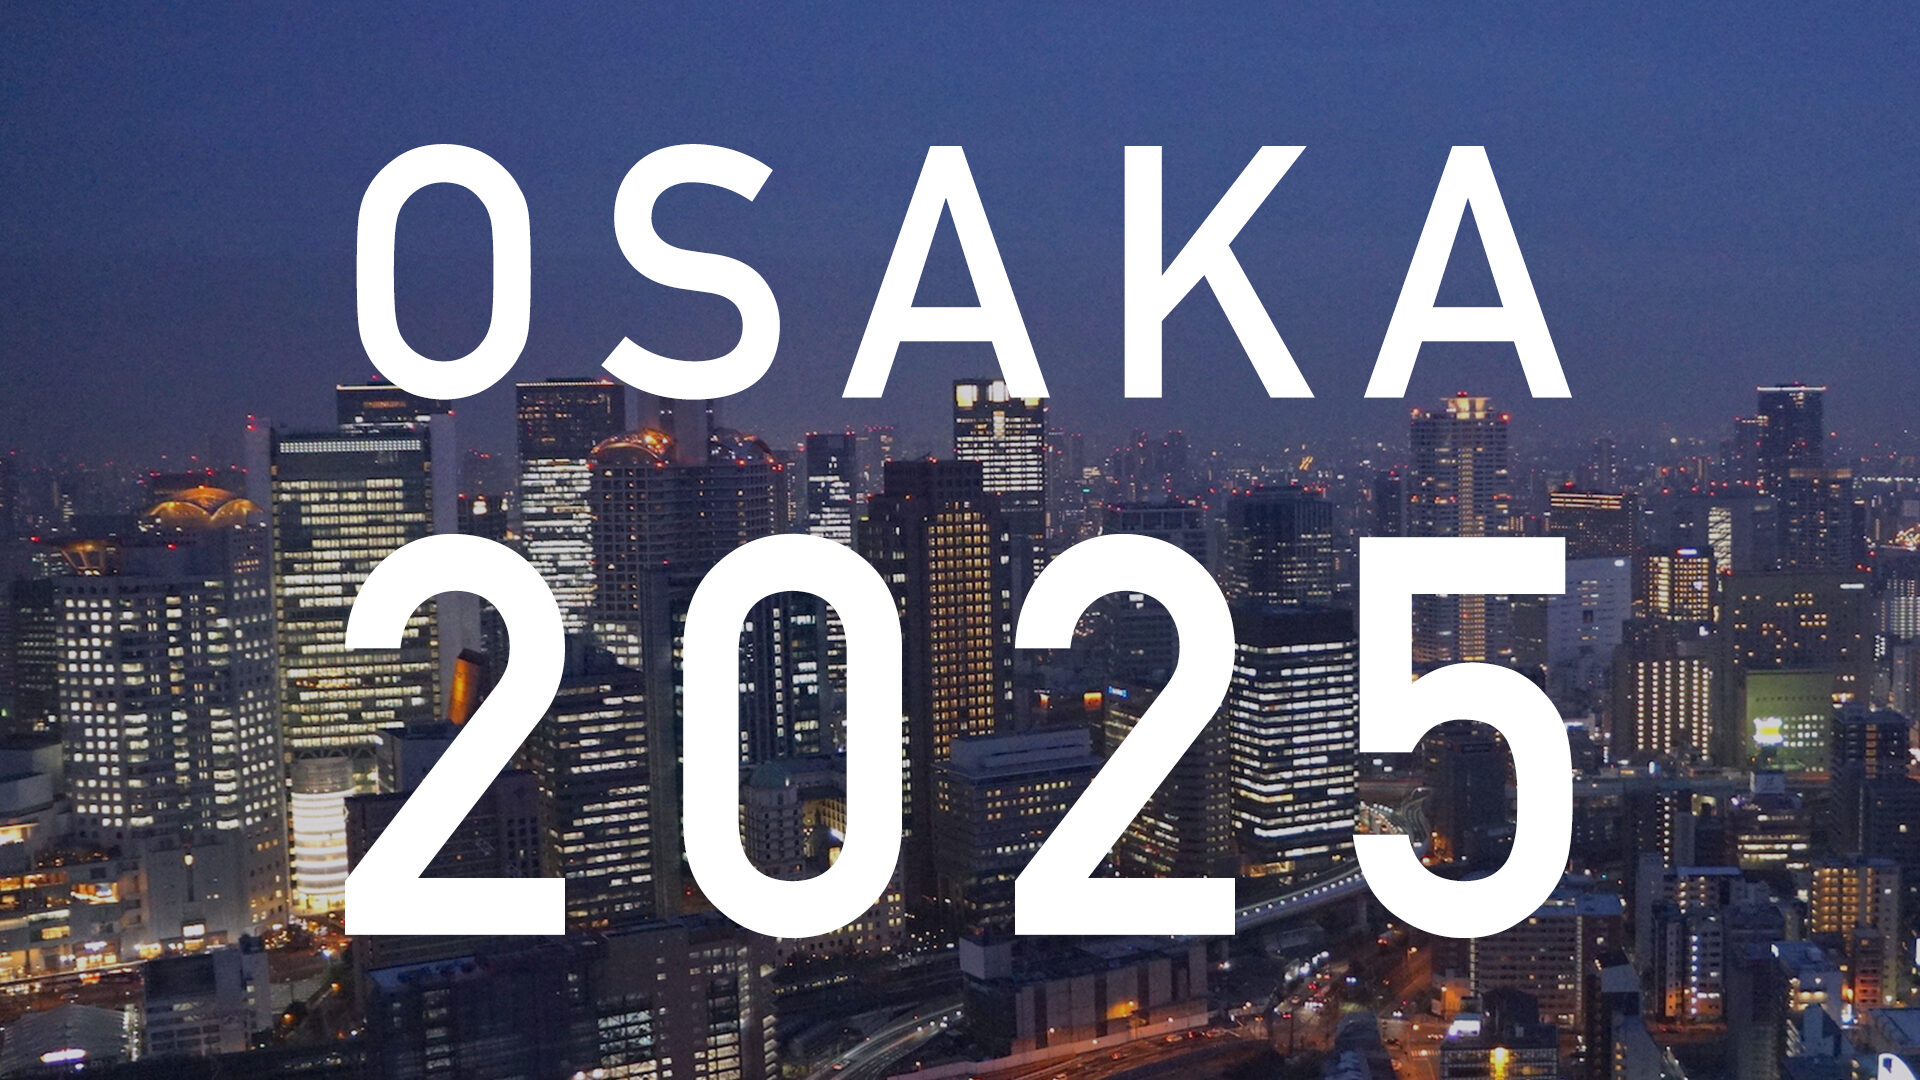 大阪万博までに完成予定の再開発計画まとめ。2025年までに続々竣工予定。のサムネイル画像